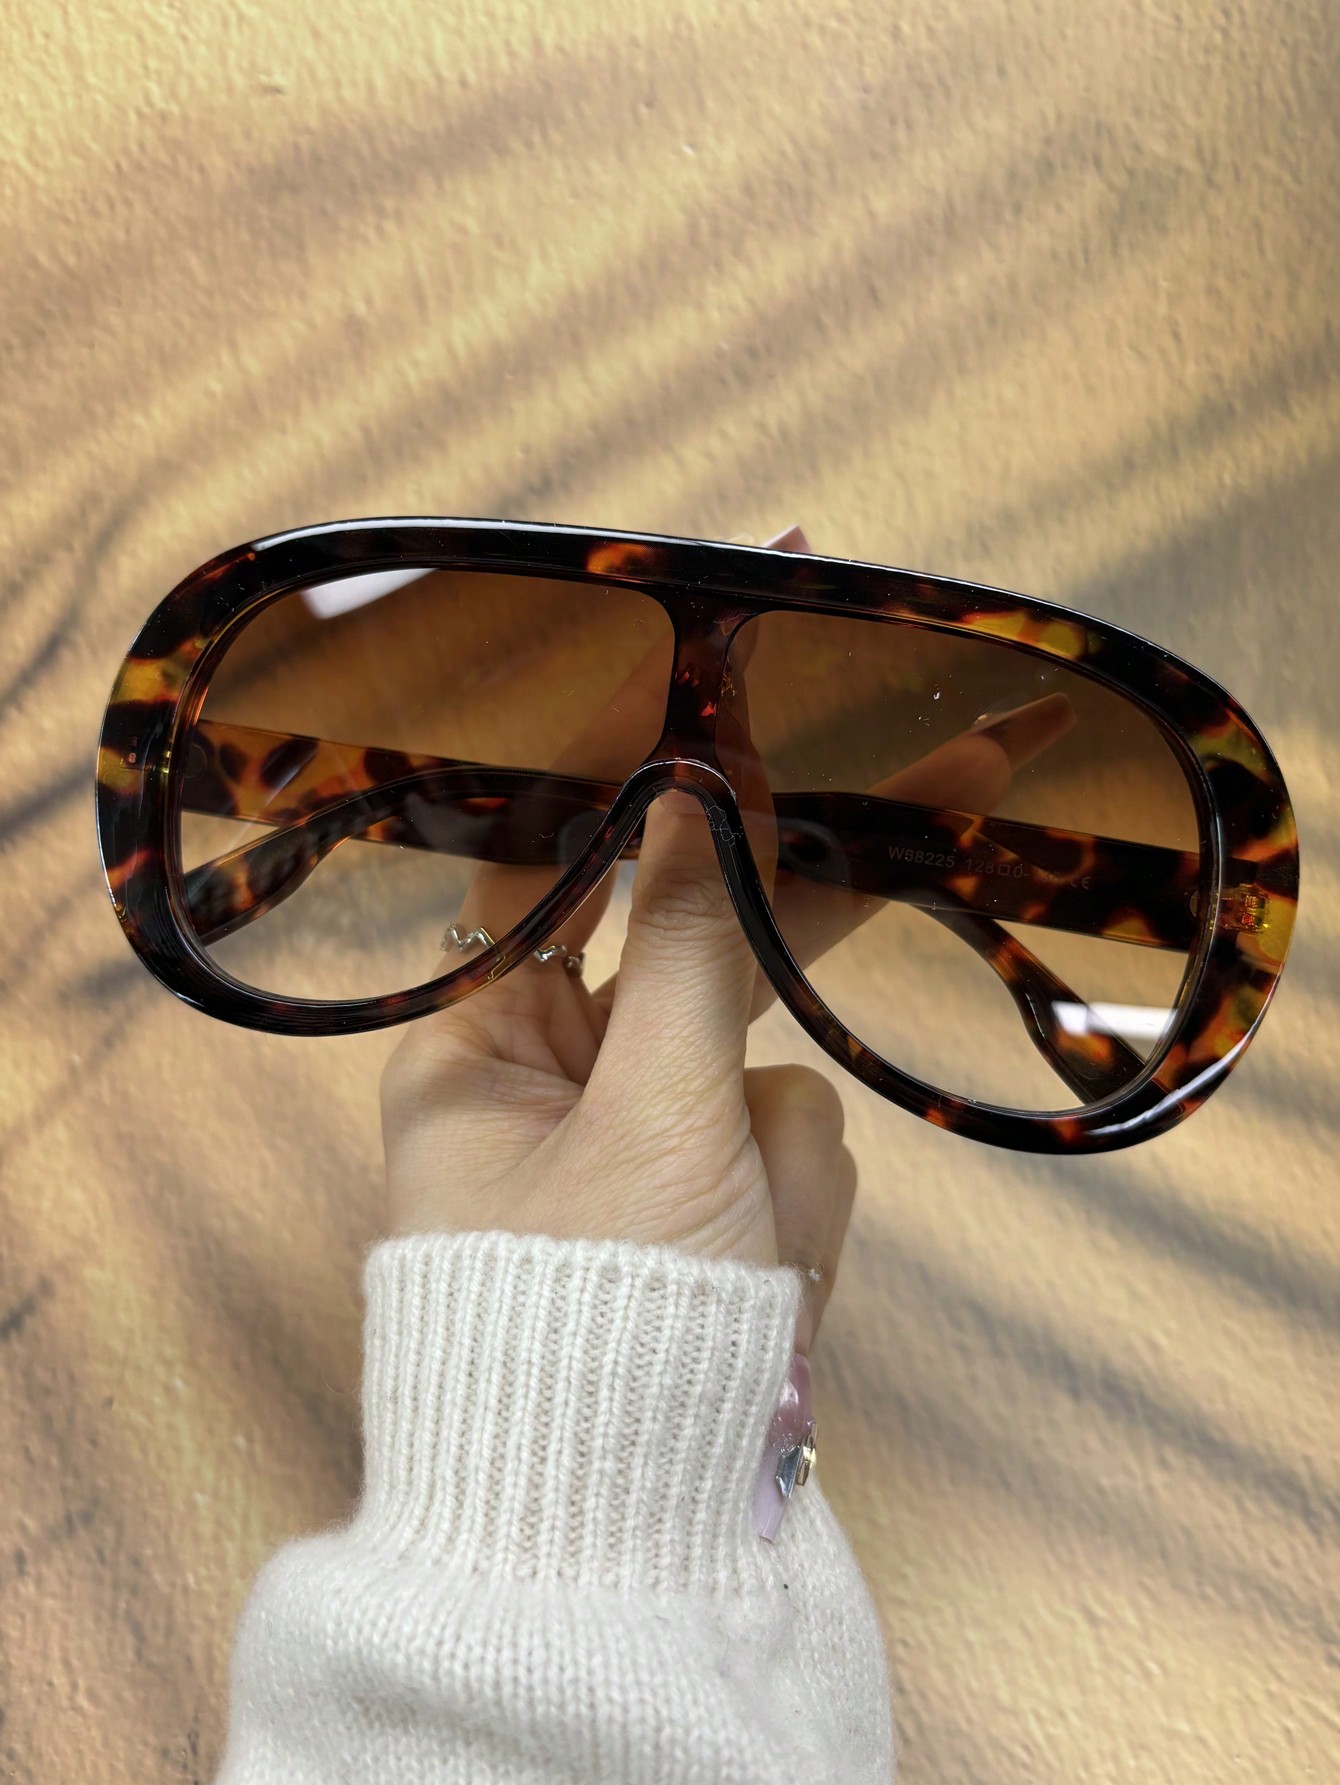 1 шт. новые модные солнцезащитные очки в стиле авиатора с большой оправой для защиты от солнца на открытом воздухе фотографии